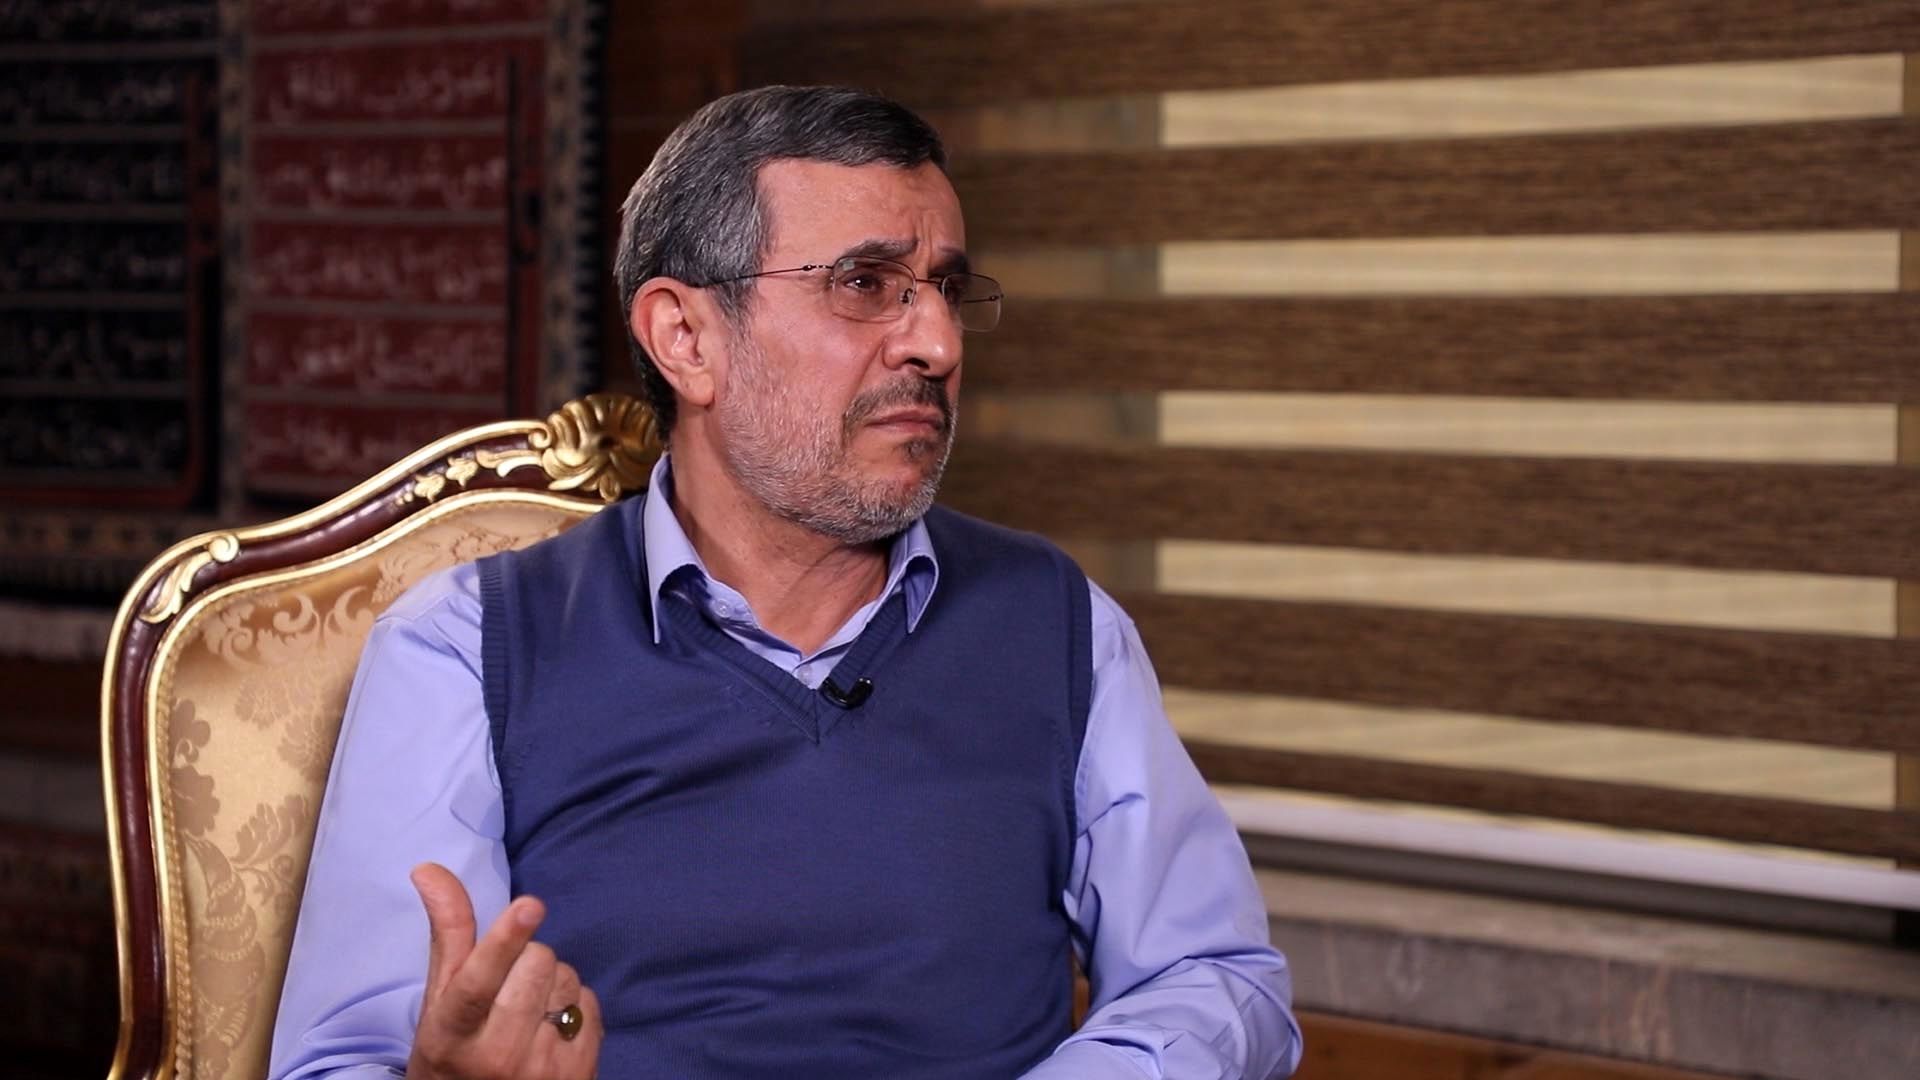 احمدی نژاد: مردم در دولت خاتمی، هاشمی و روحانی لت و پار شدند/ می توانستیم تحریم ها را برداریم اما.../ اگر احساس وظیفه کنم در انتخابات ریاست جمهوری ثبت نام می کنم